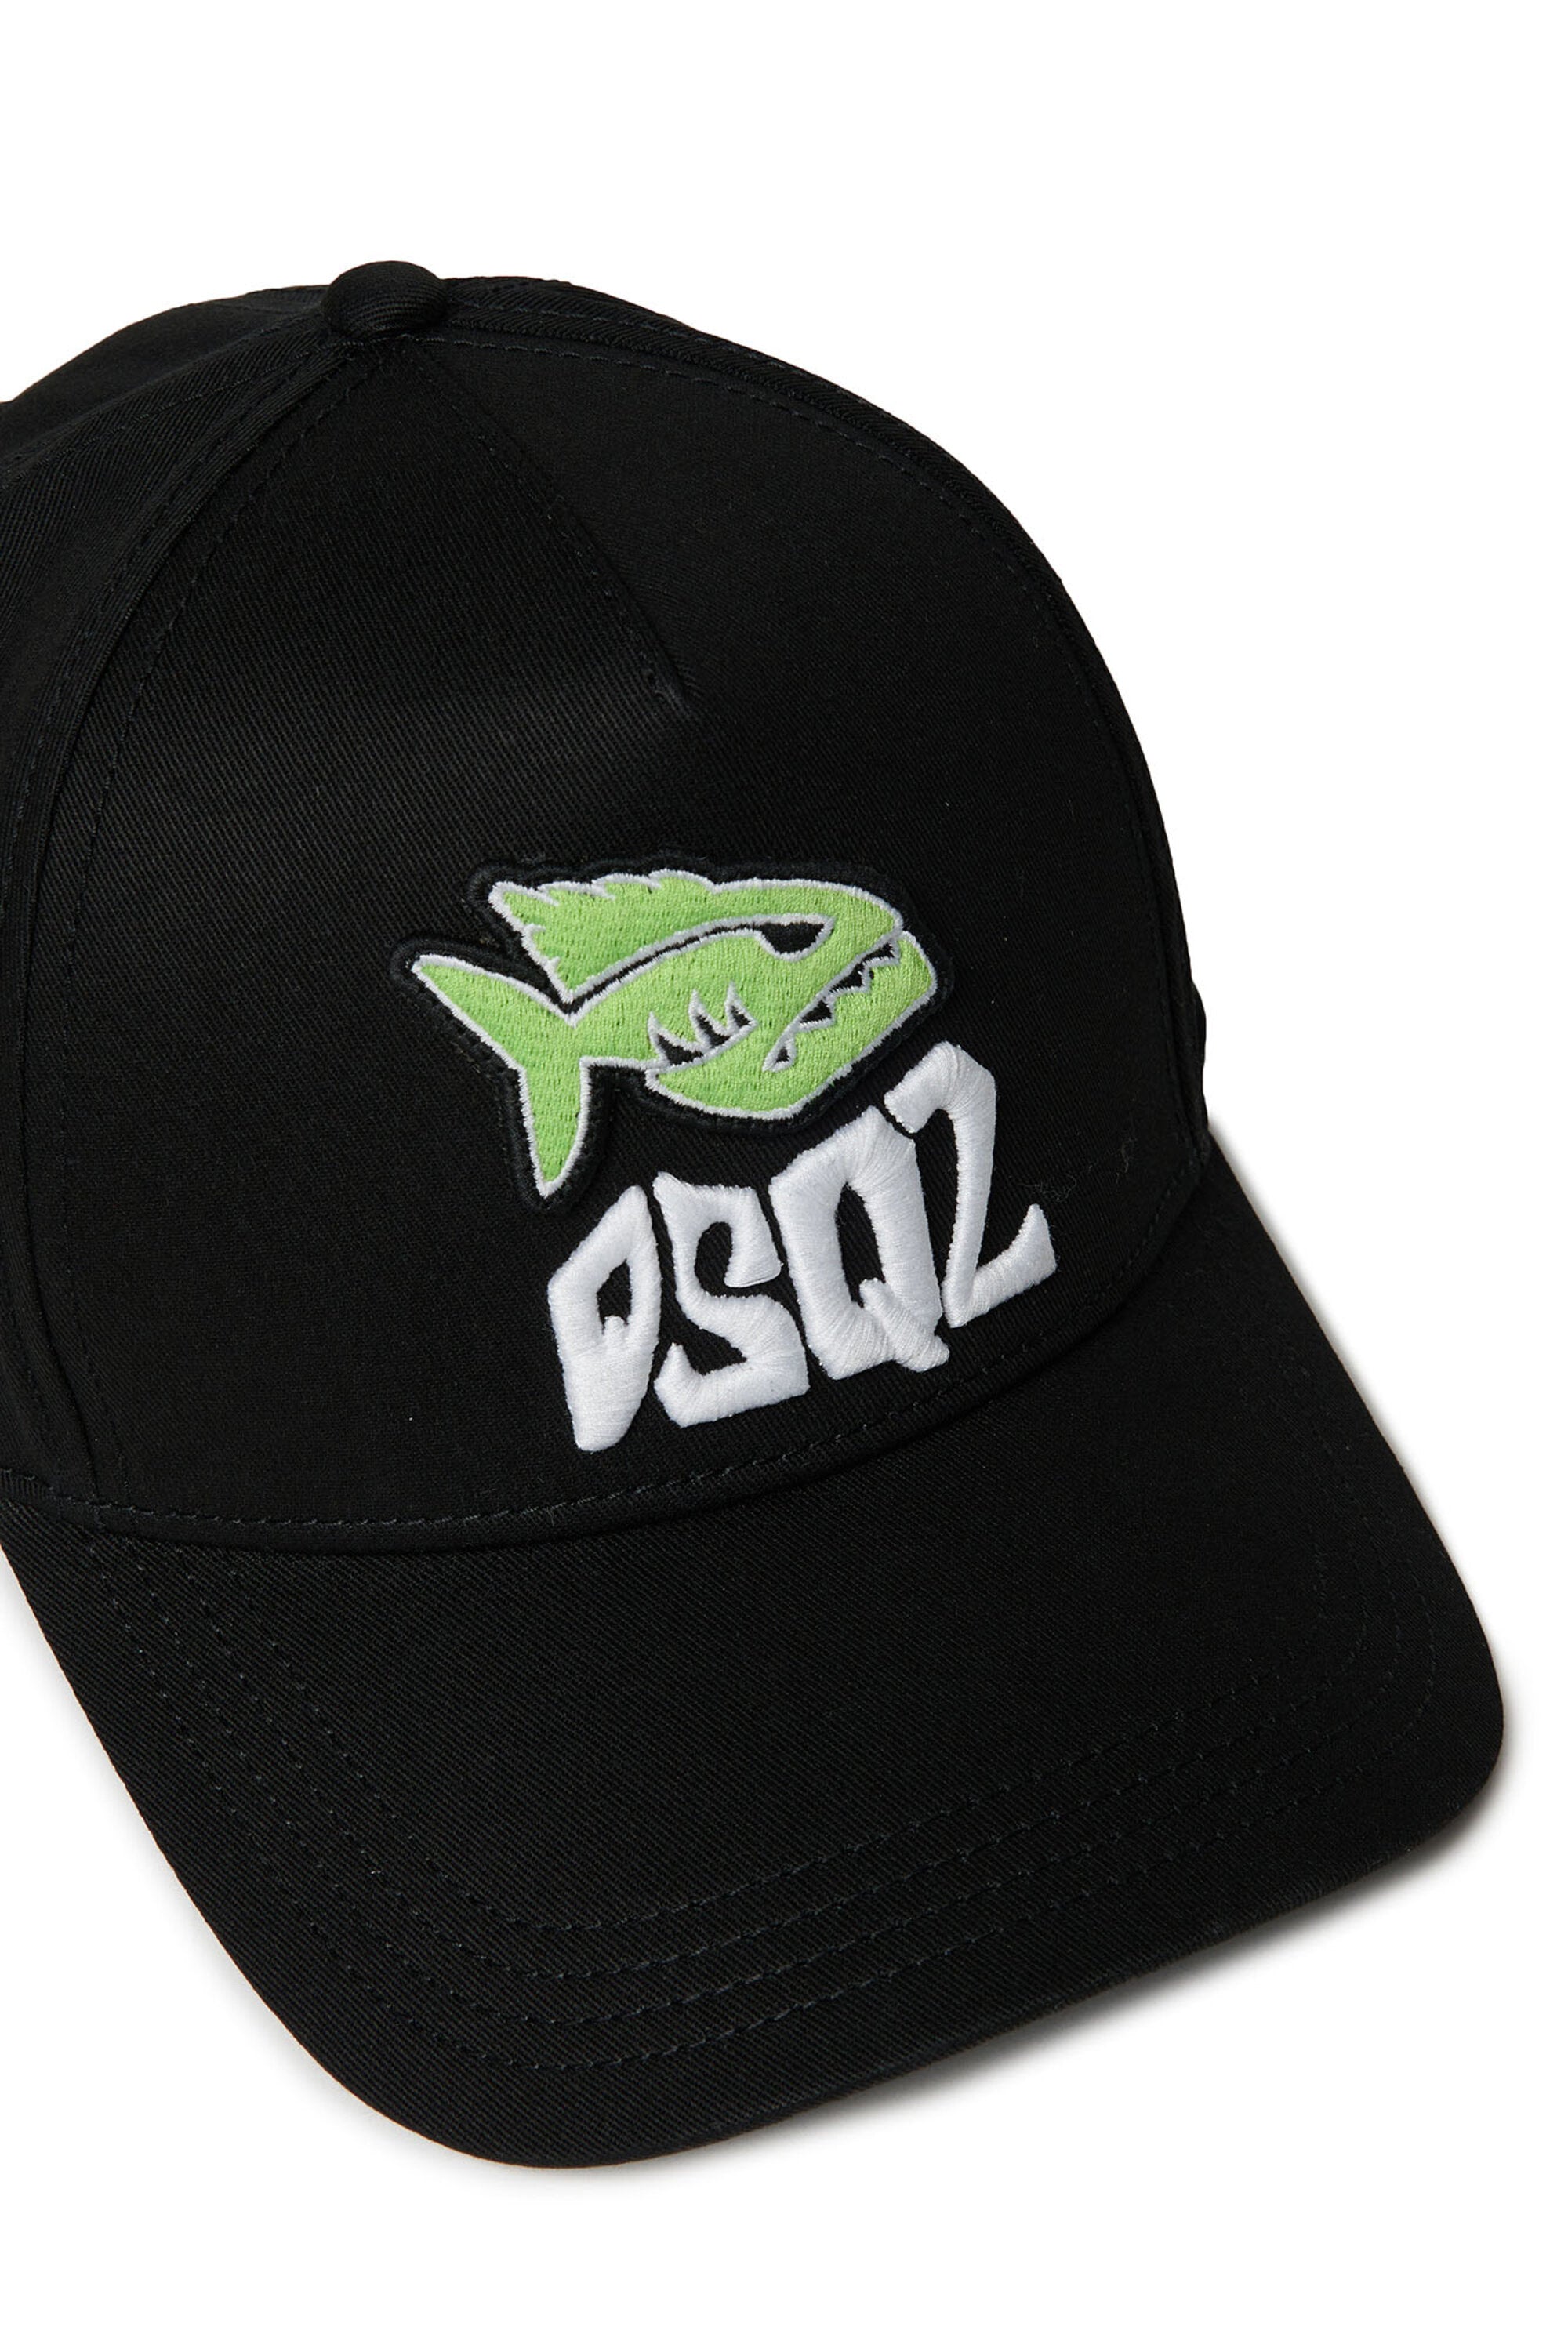 Baseball hat with piranha graphic